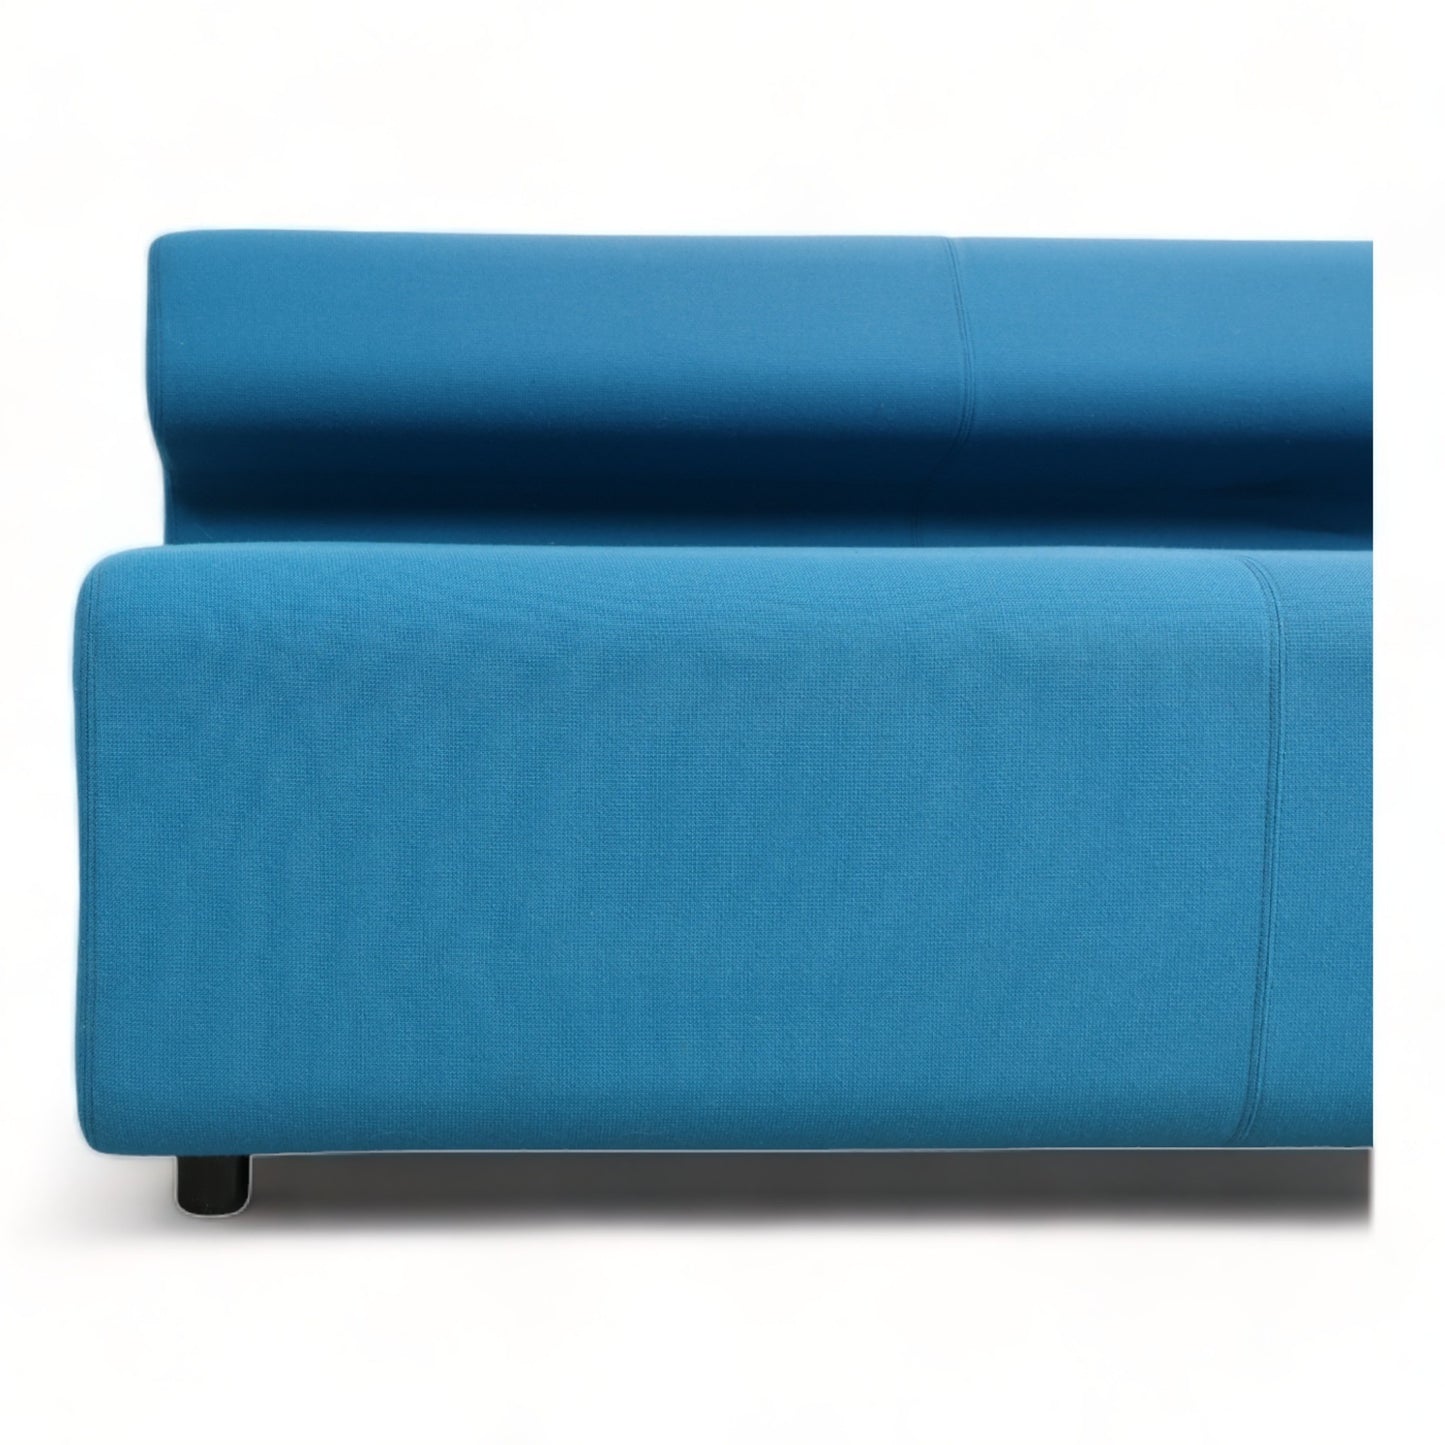 Nyrenset | Fora Form Up 2-seter sofa